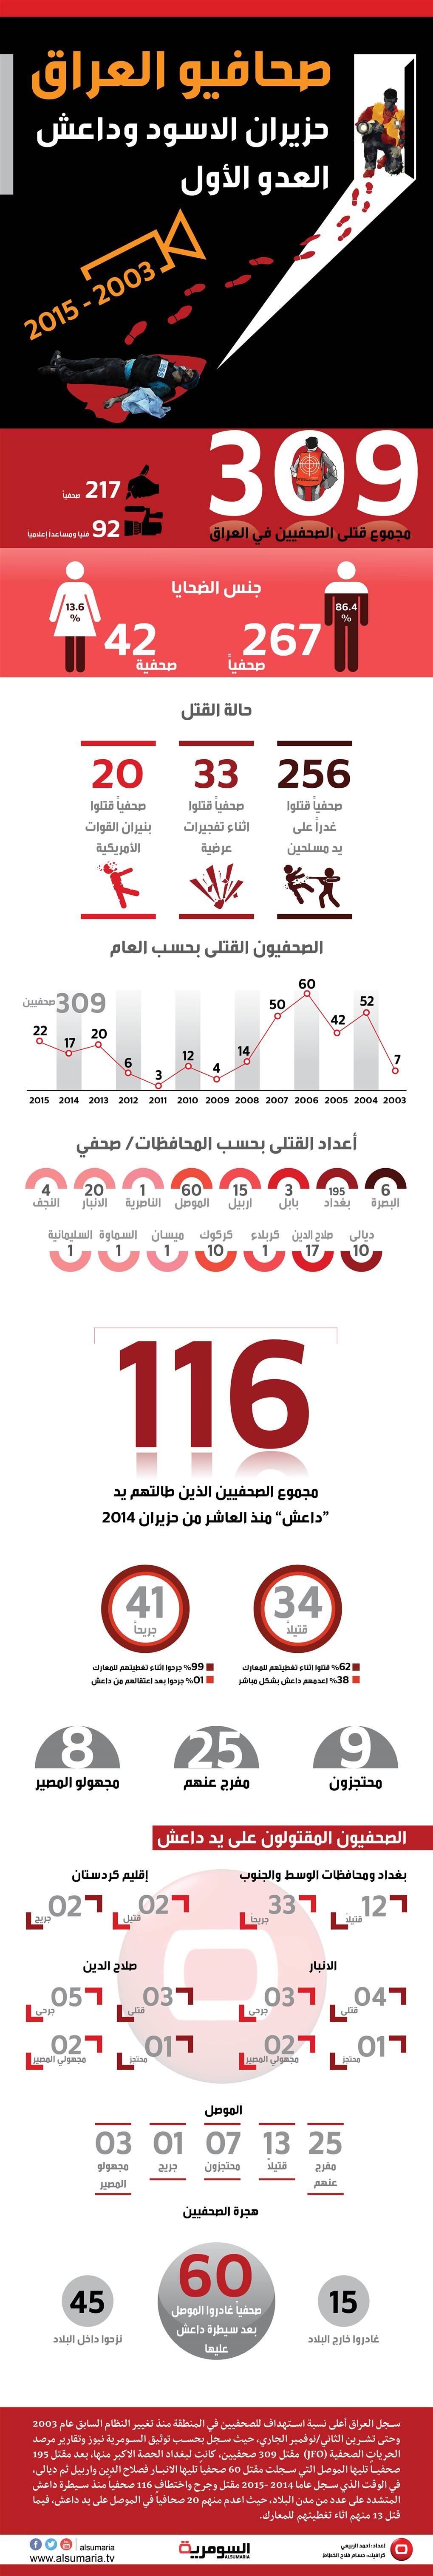 309 صحفيين قتلوا خلال عقد بينهم 116 ضحايا داعش